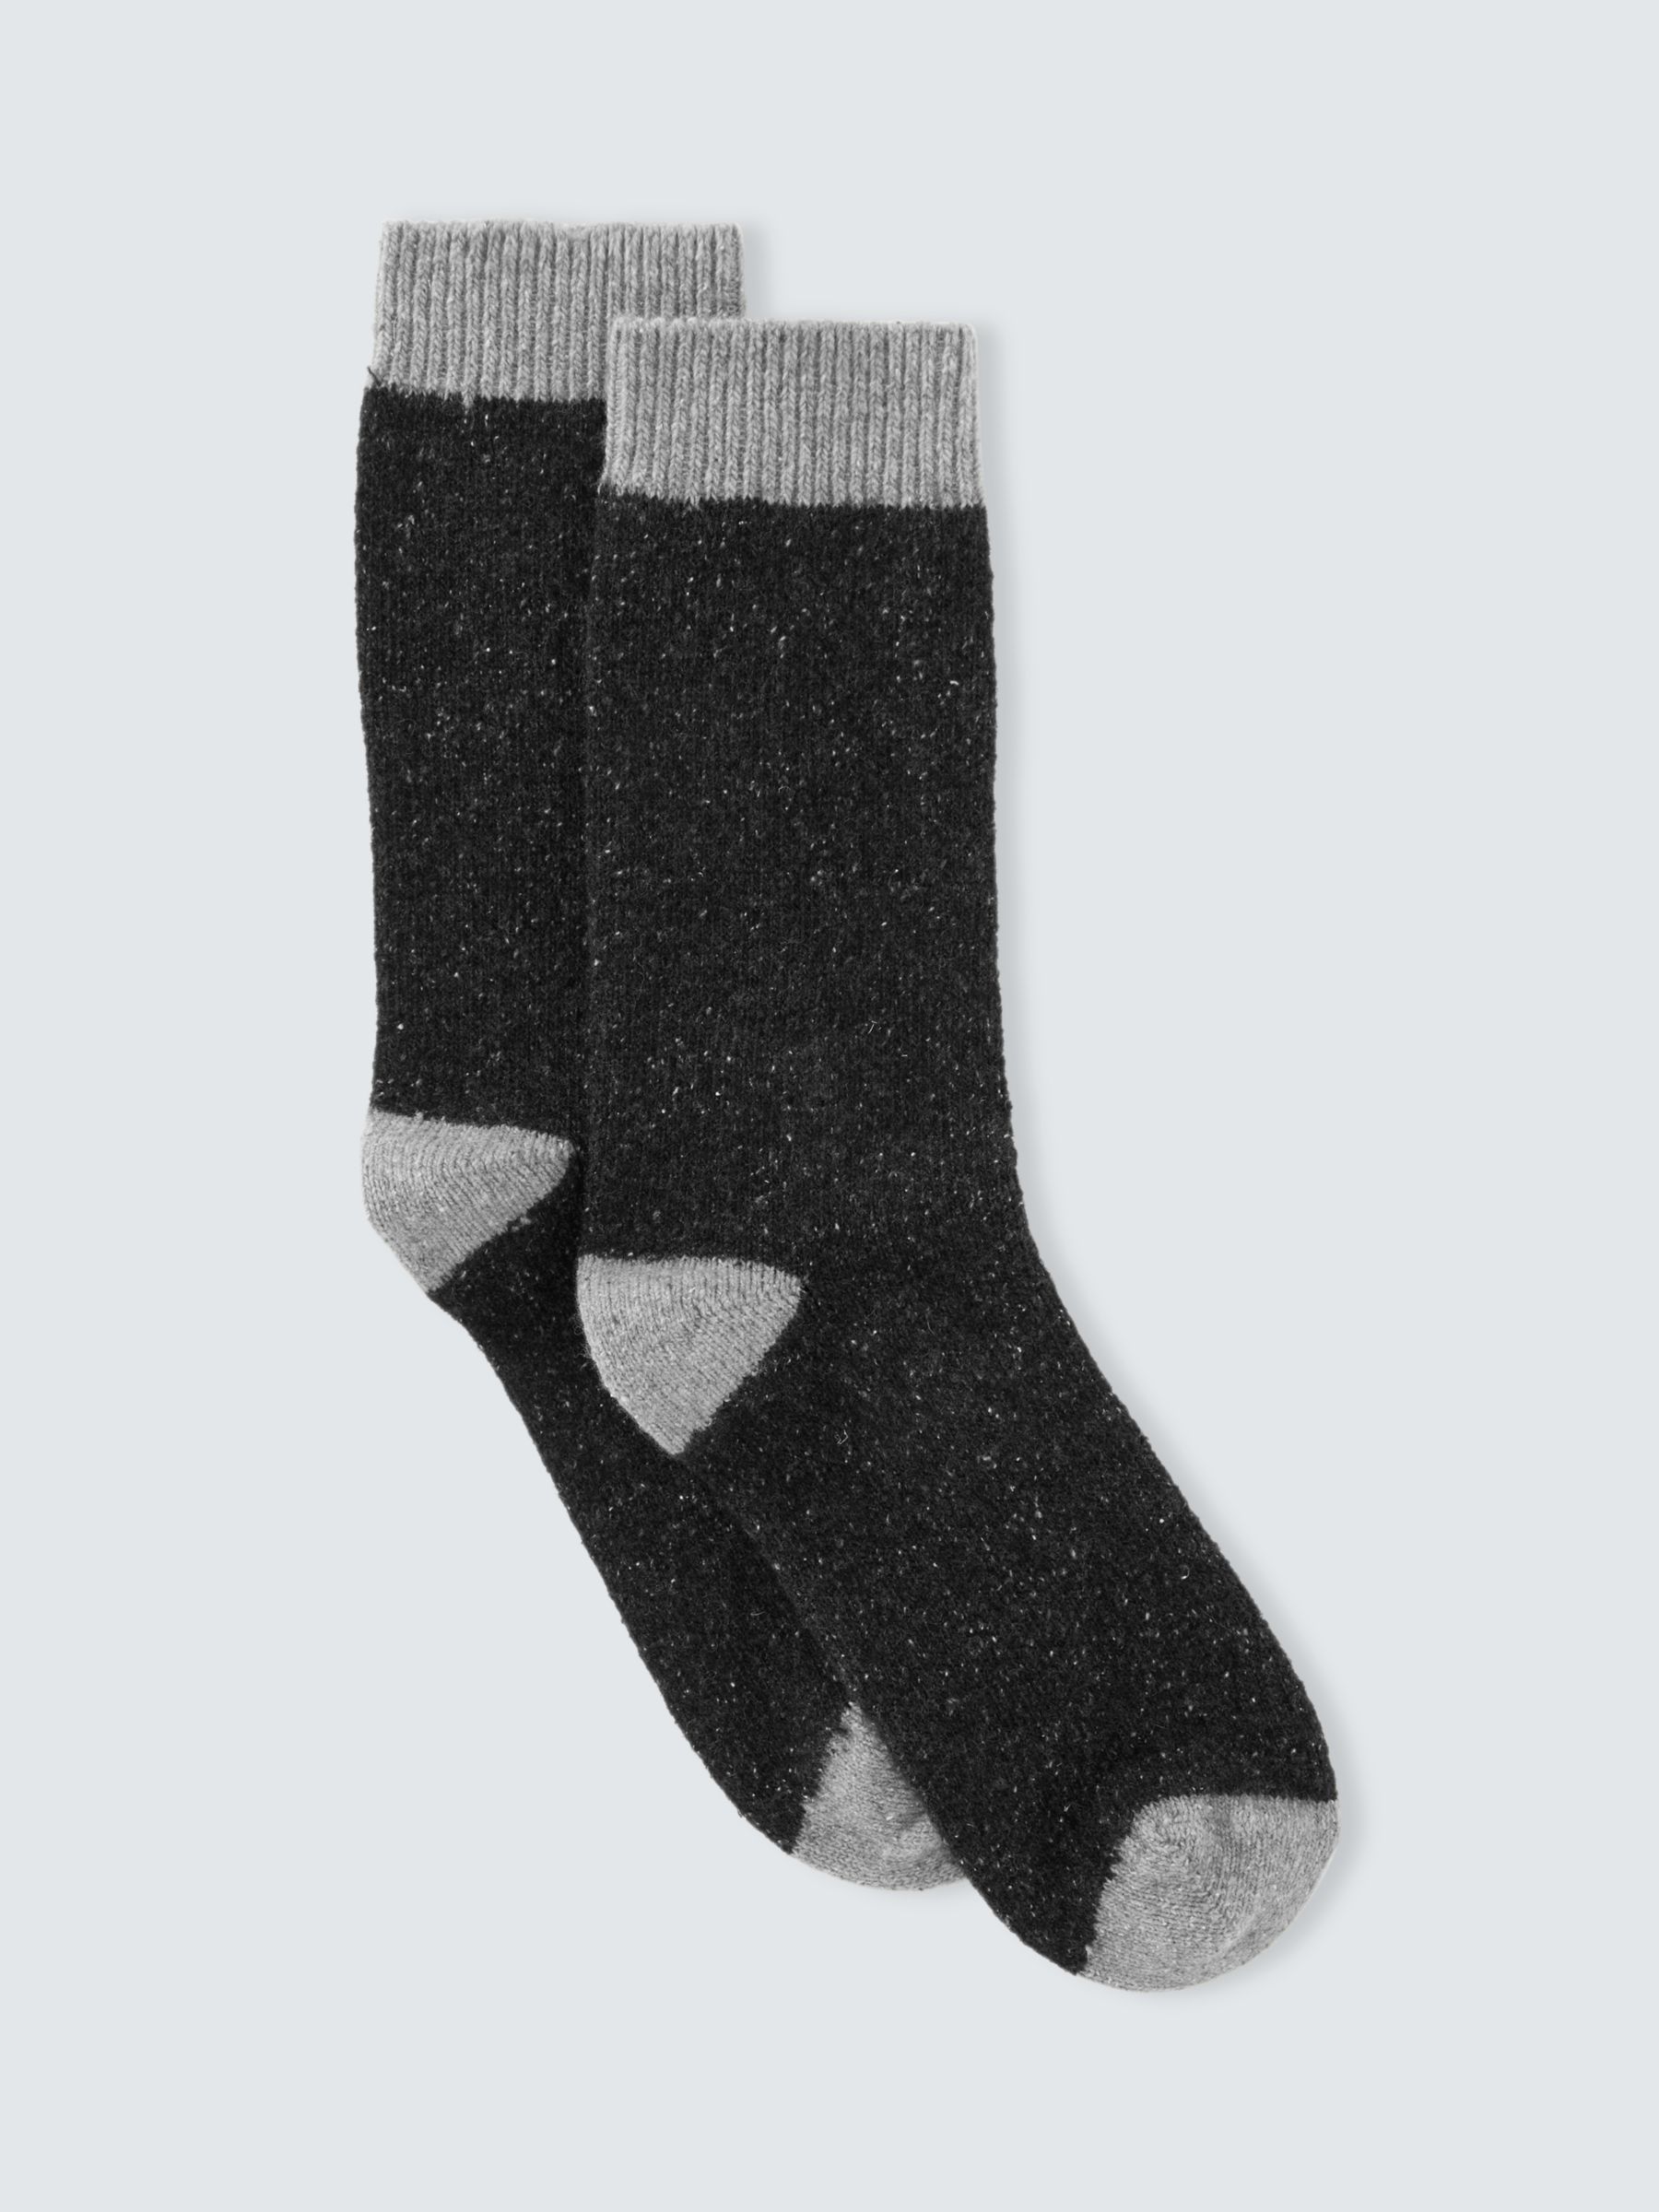 Colour Block Women's Socks